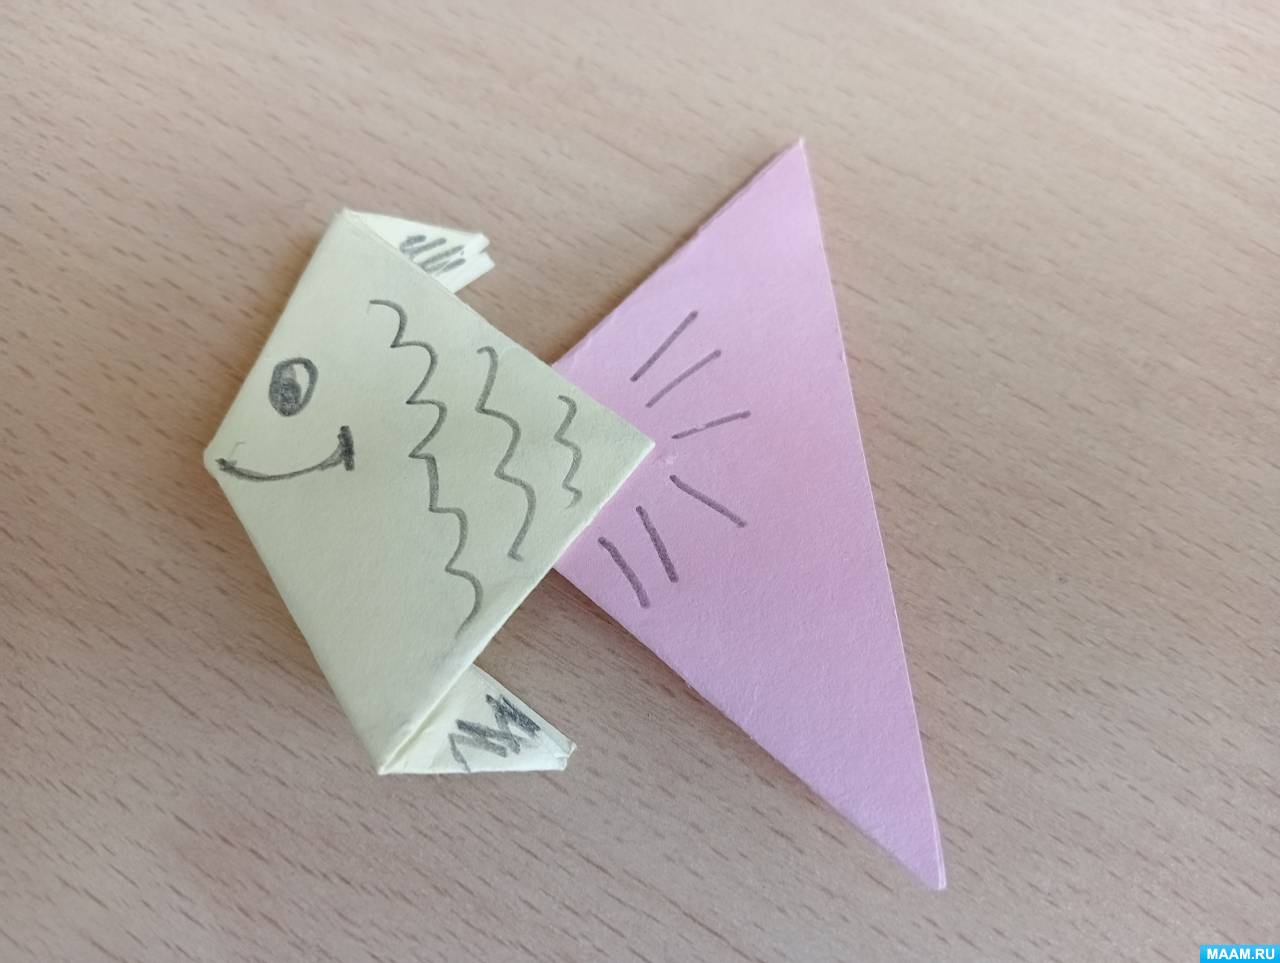 «Рыбка». Мастер-класс по созданию поделки из бумаги в технике «оригами» для дошкольников с нарушением зрения